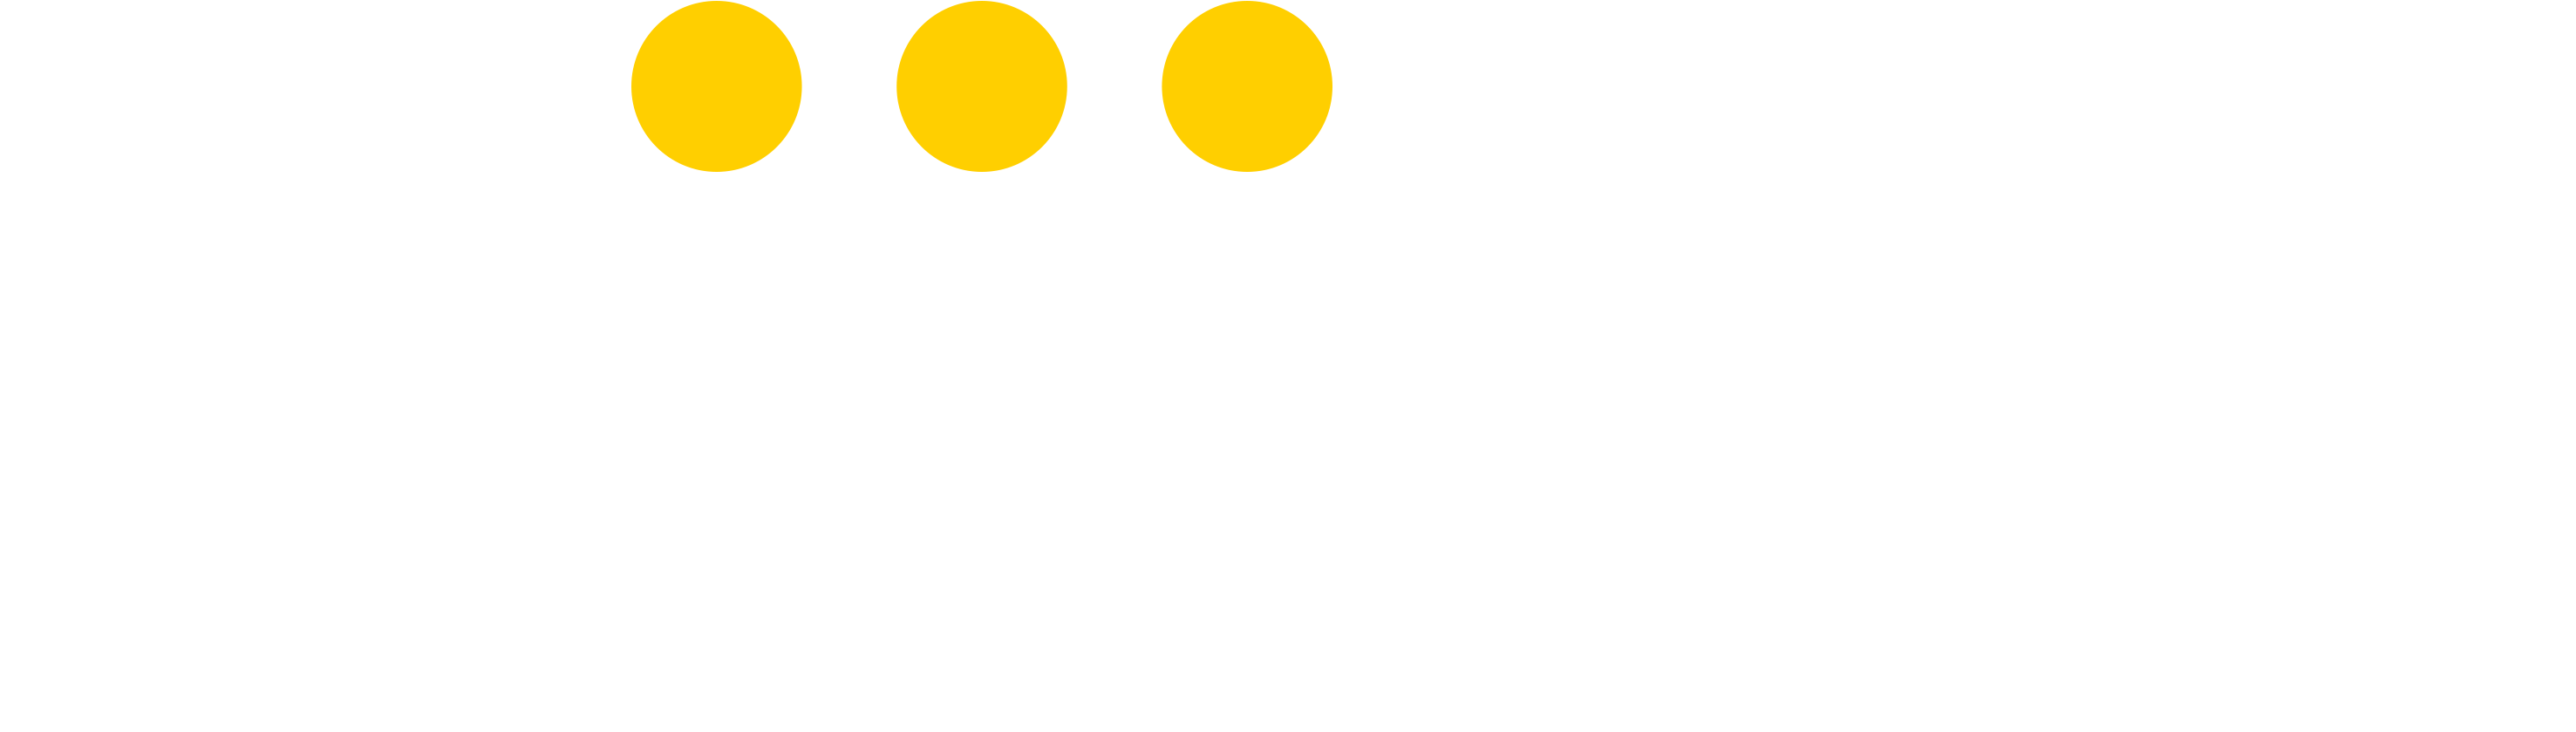 Neighbrly Logo